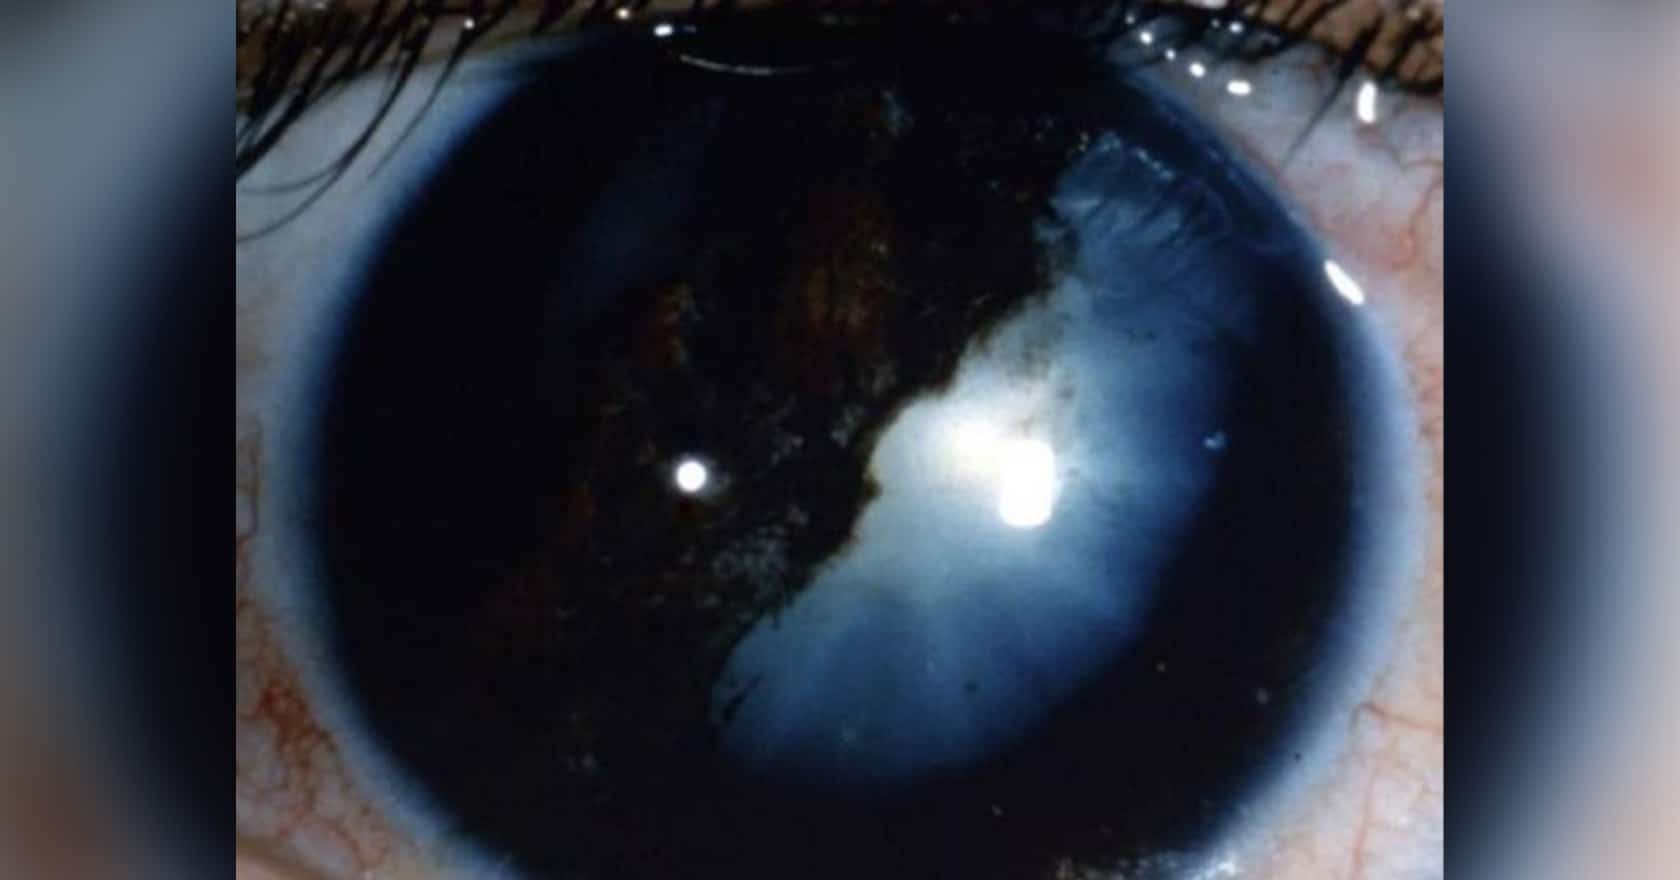 Cataracte induite par les traumatismes | chirurgien ophtalmologue | Dr Laurent Berthon | Lyon